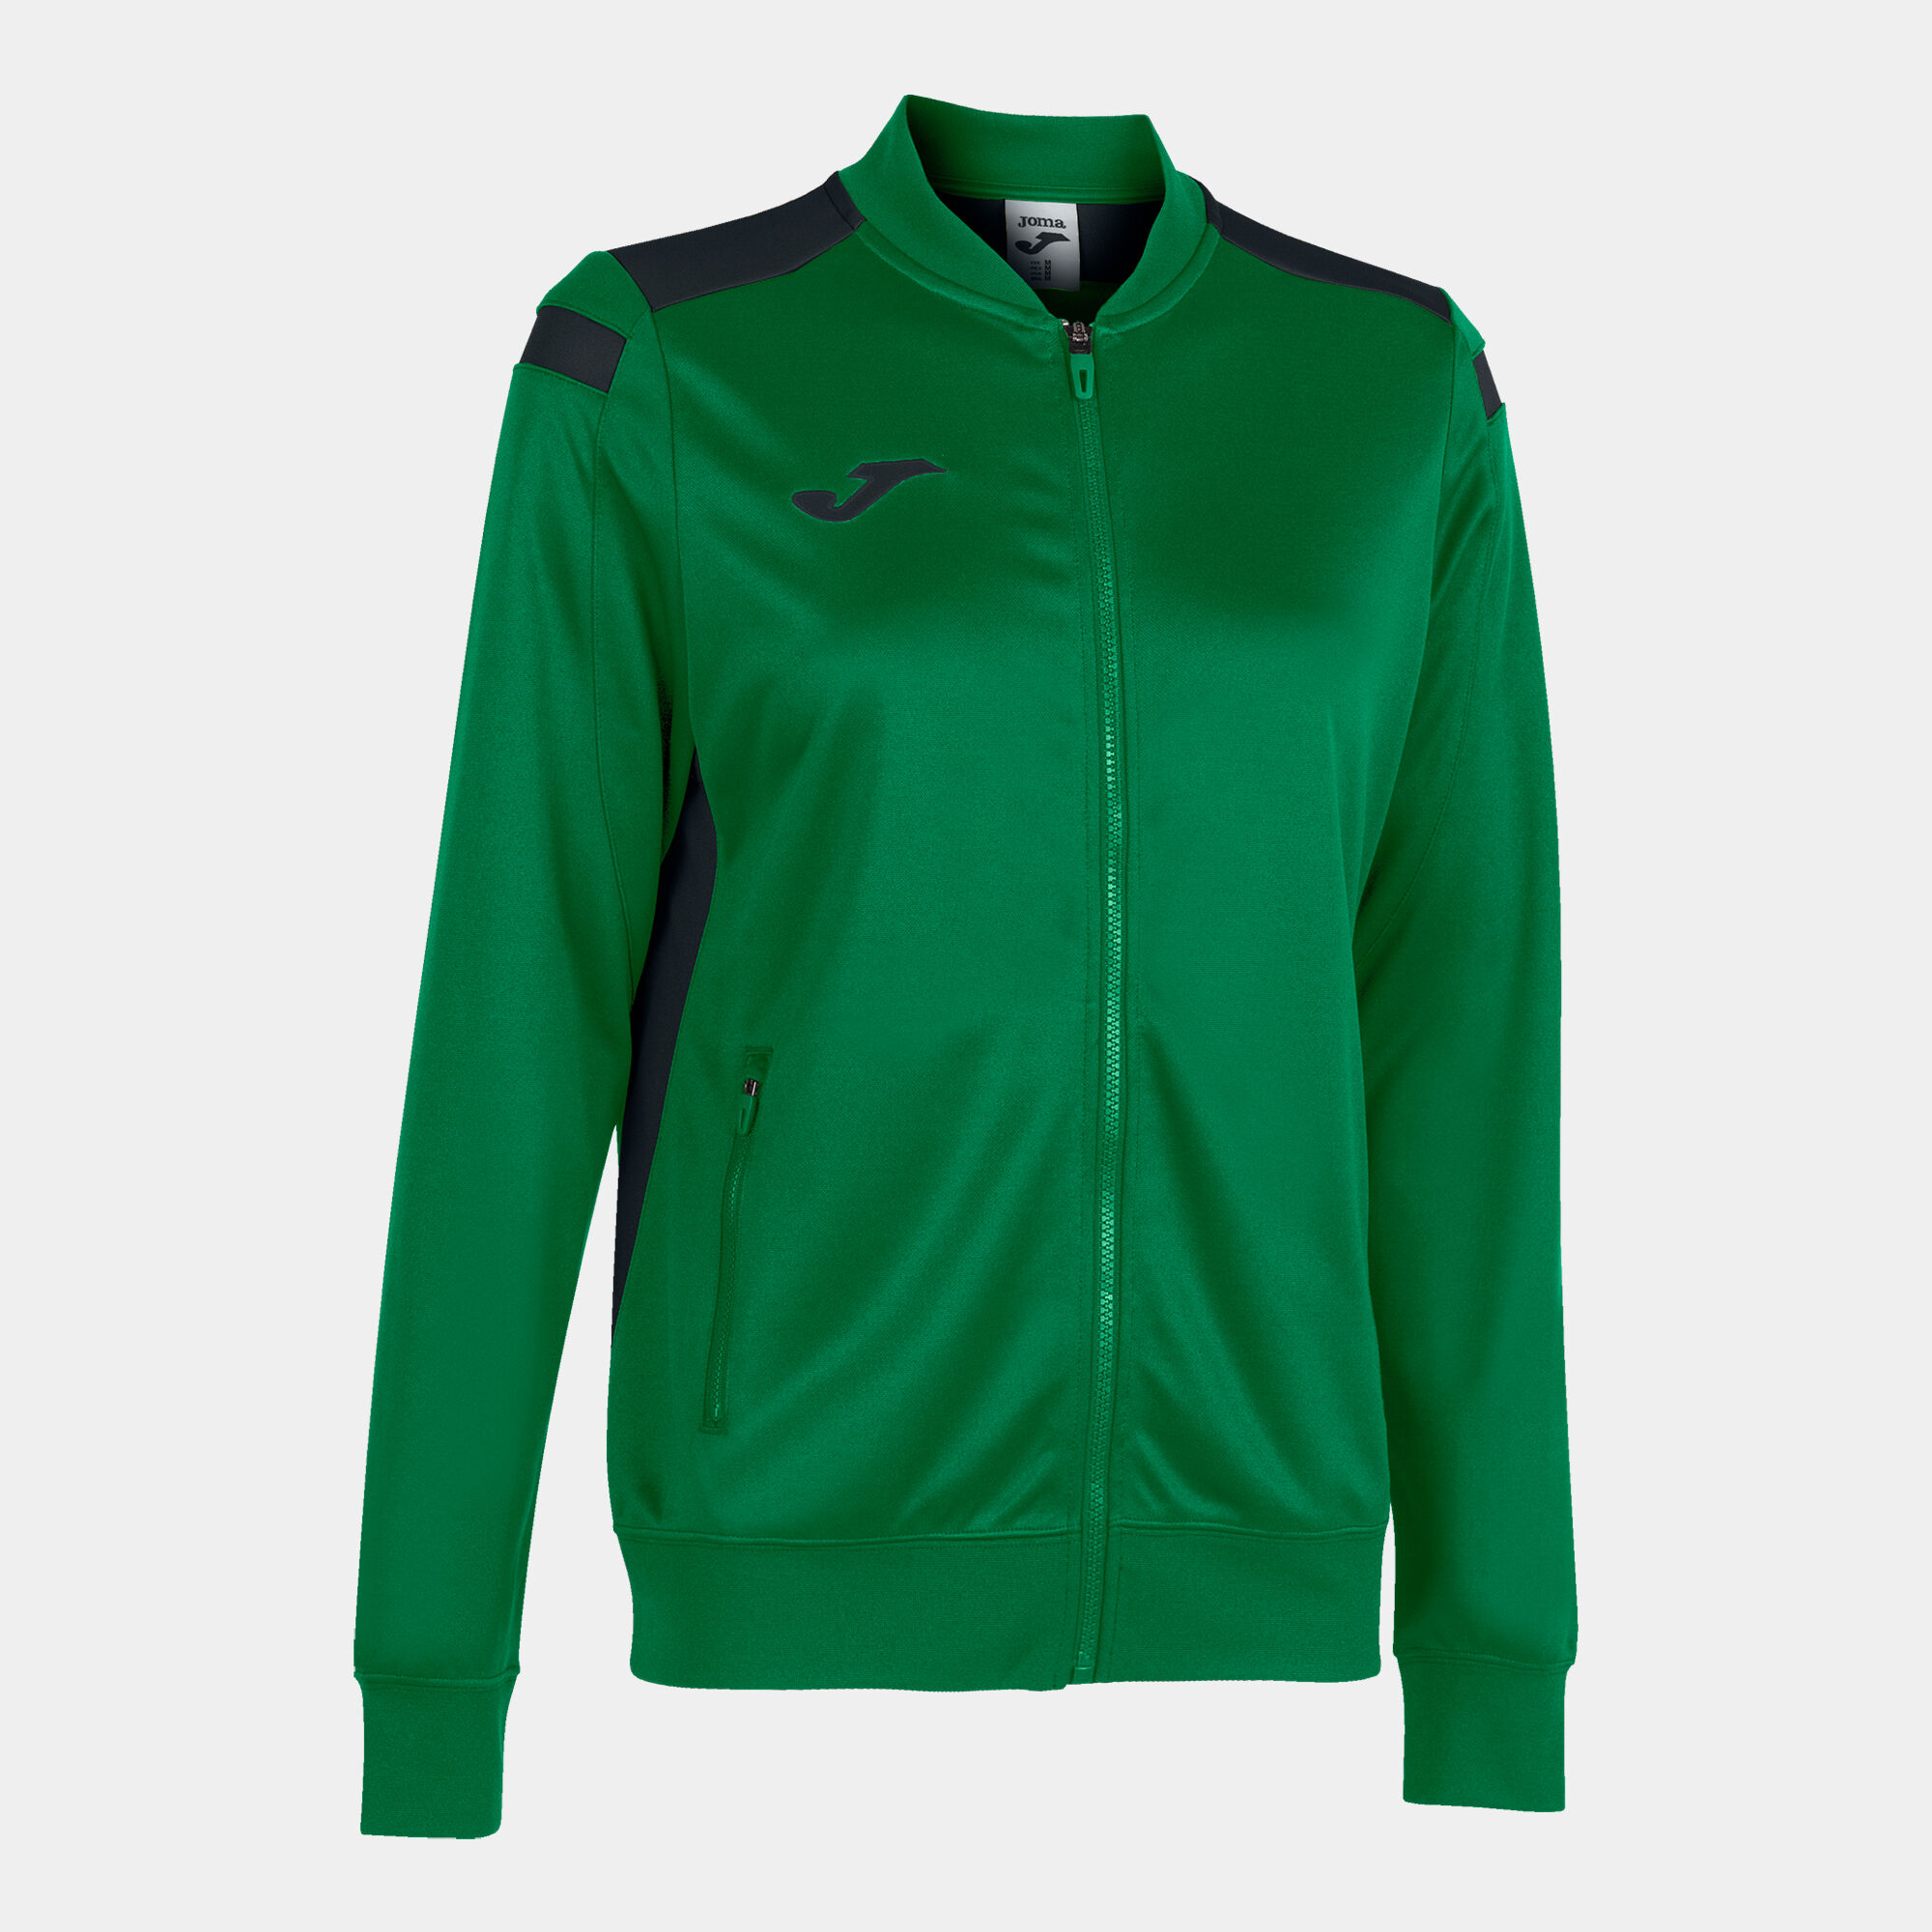 Jachetă damă Championship VI verde negru